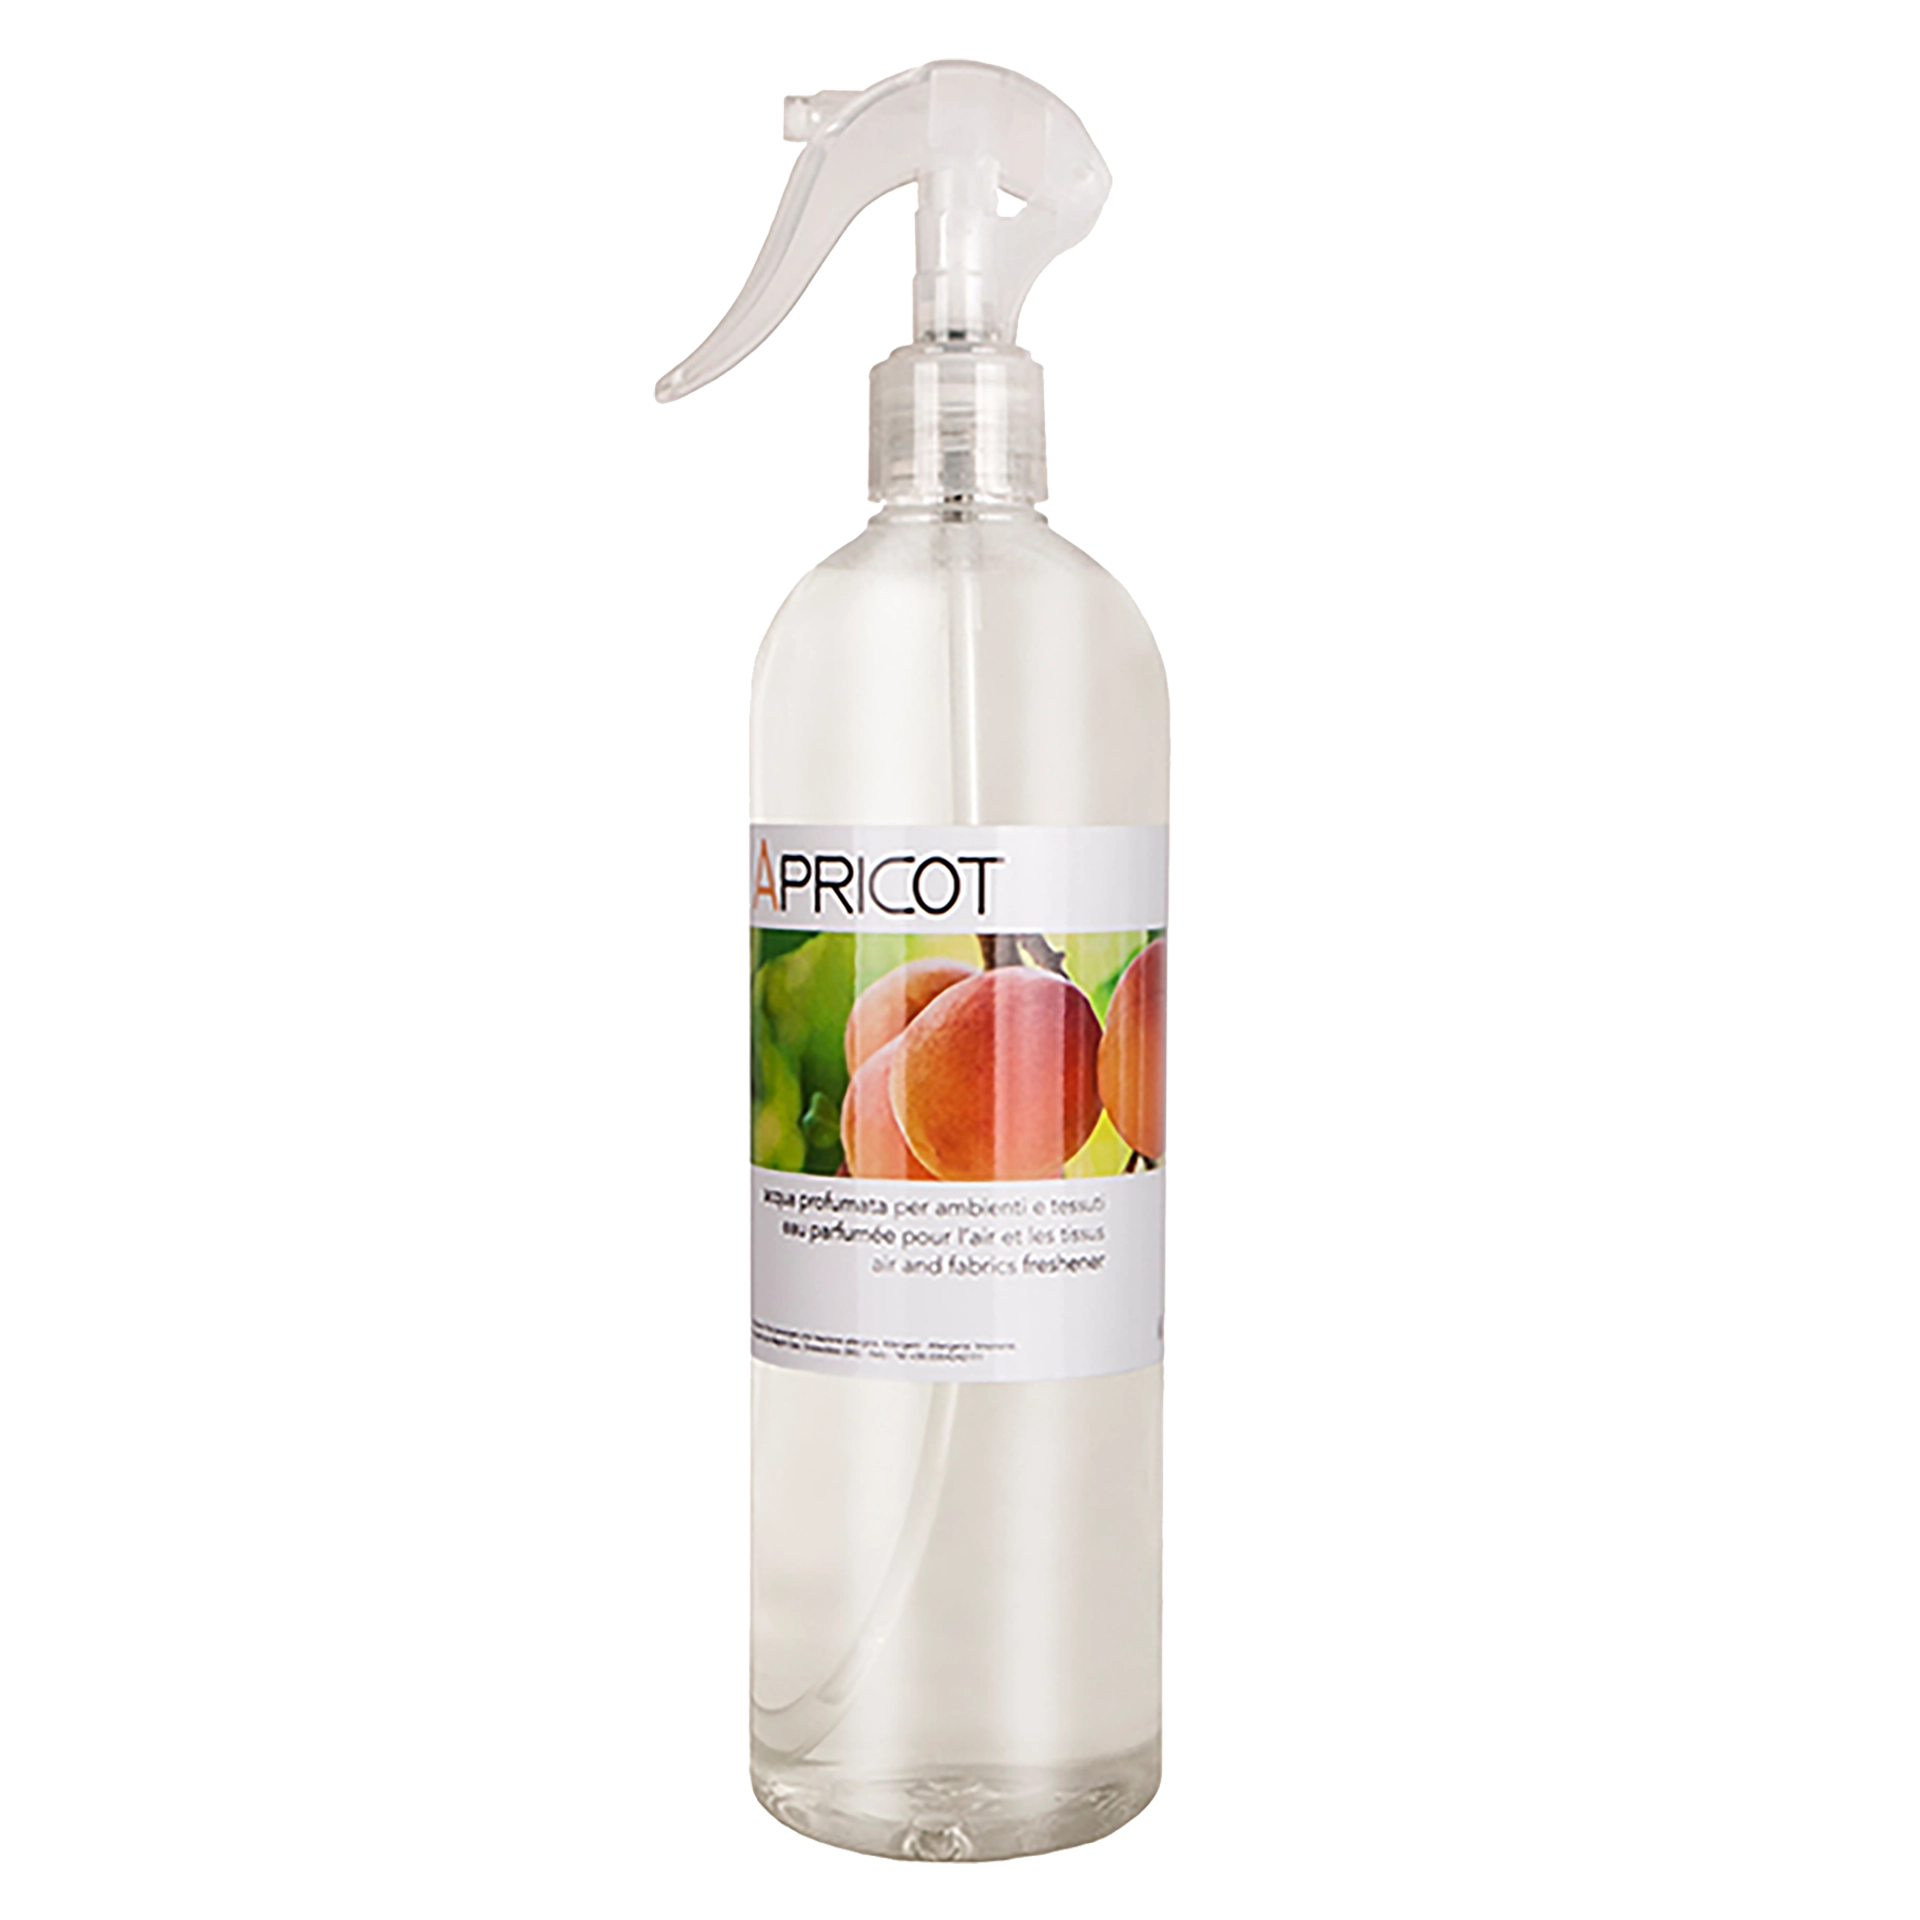 Textil- und Raumspray Apricot 500 ml 